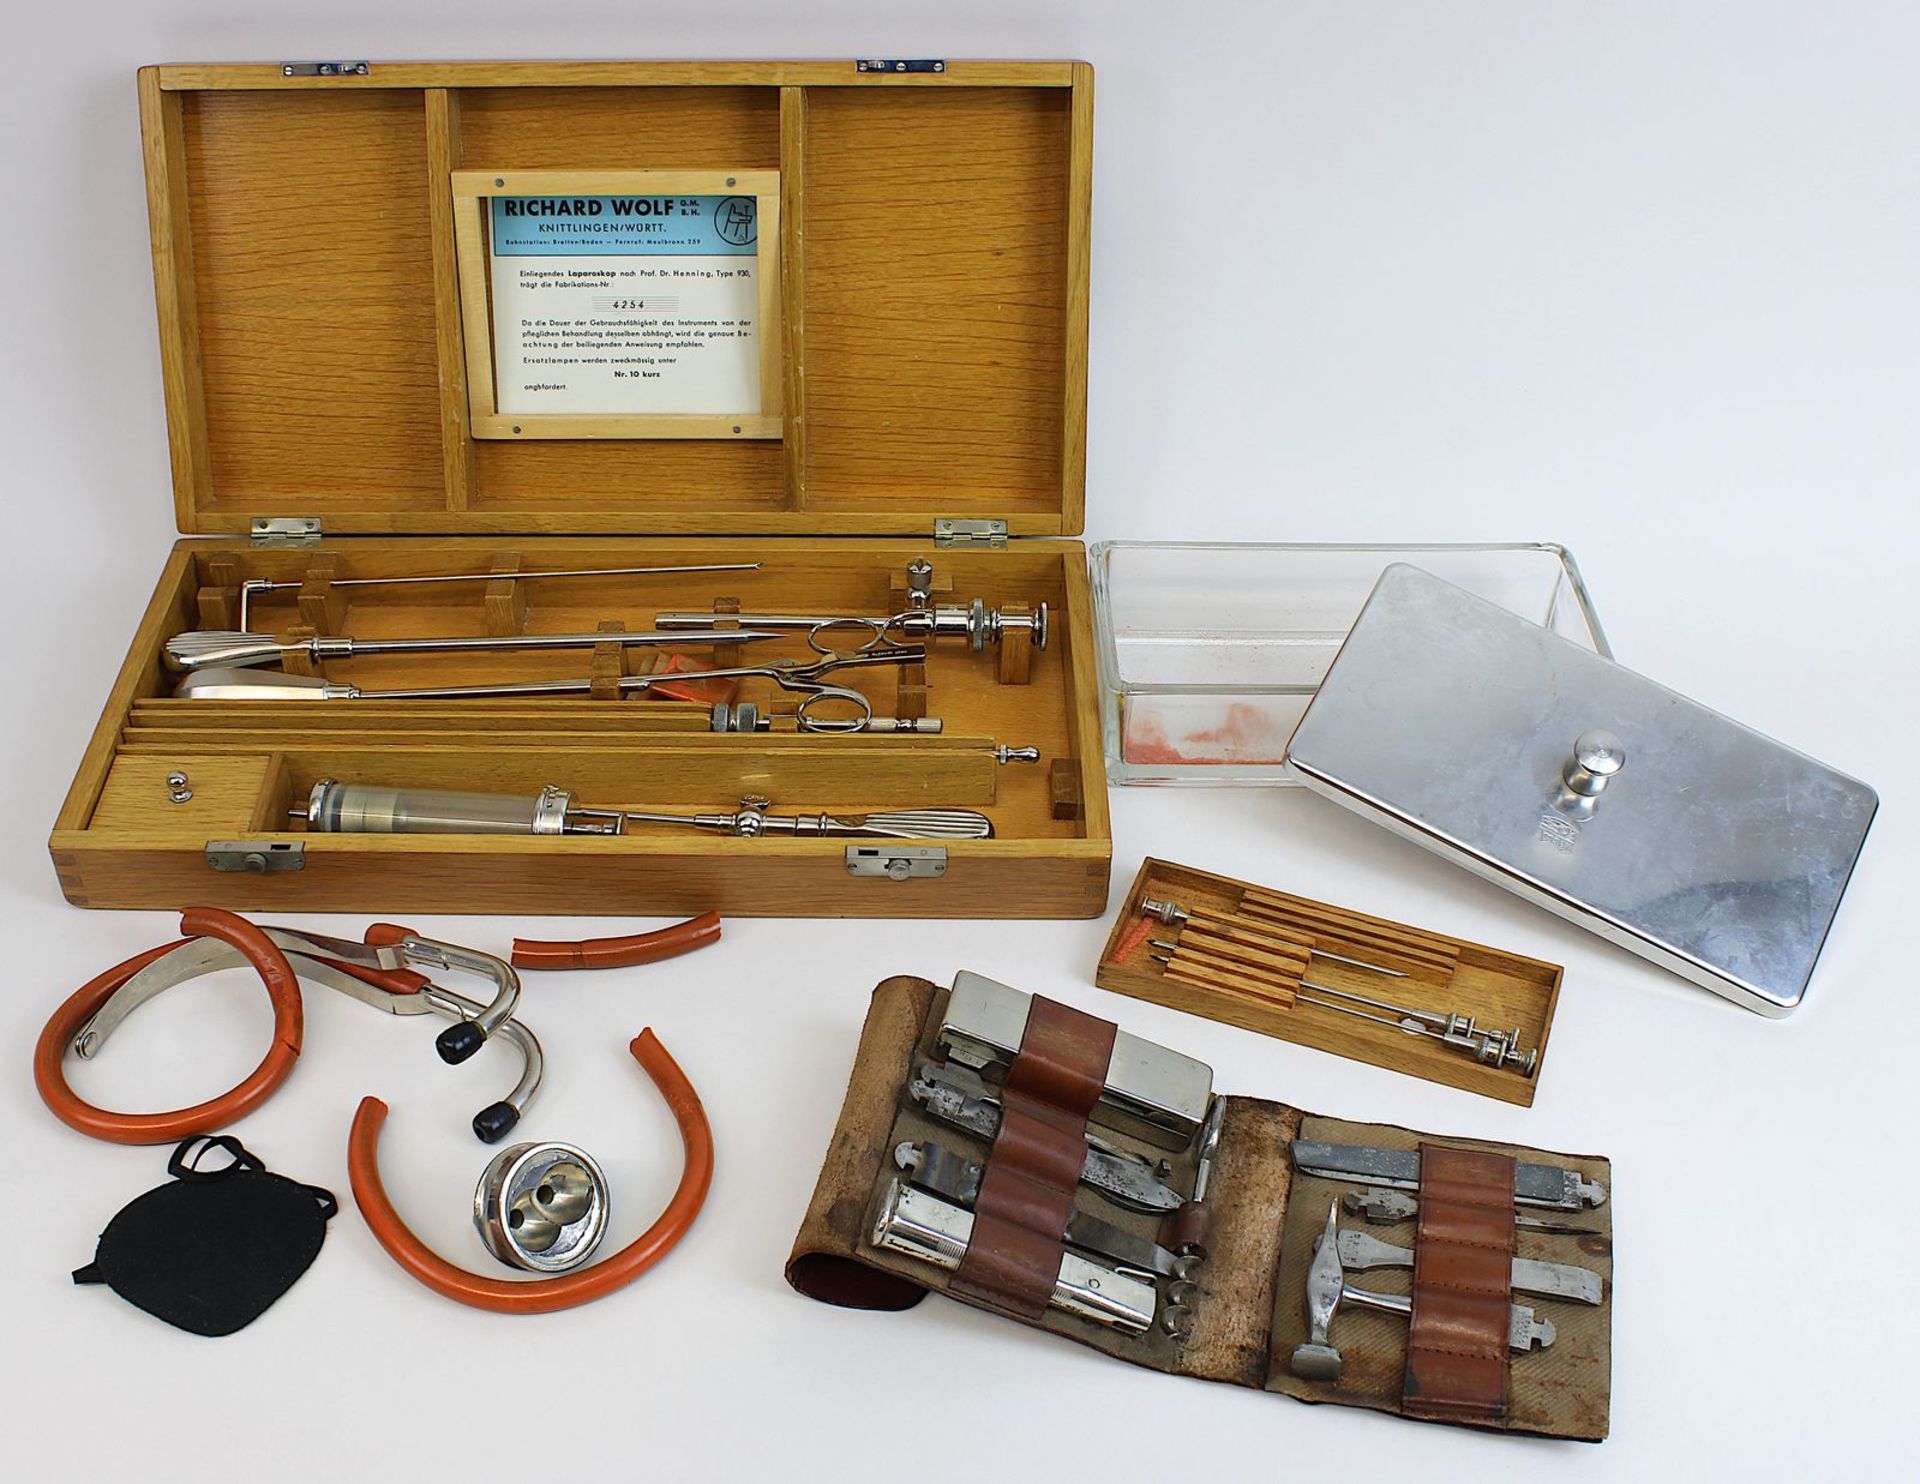 Laparoskop und Zubehör, Deutschland um 1930, Holzkasten, darin 16 Besteckteile, Etui mit Stethoskop,